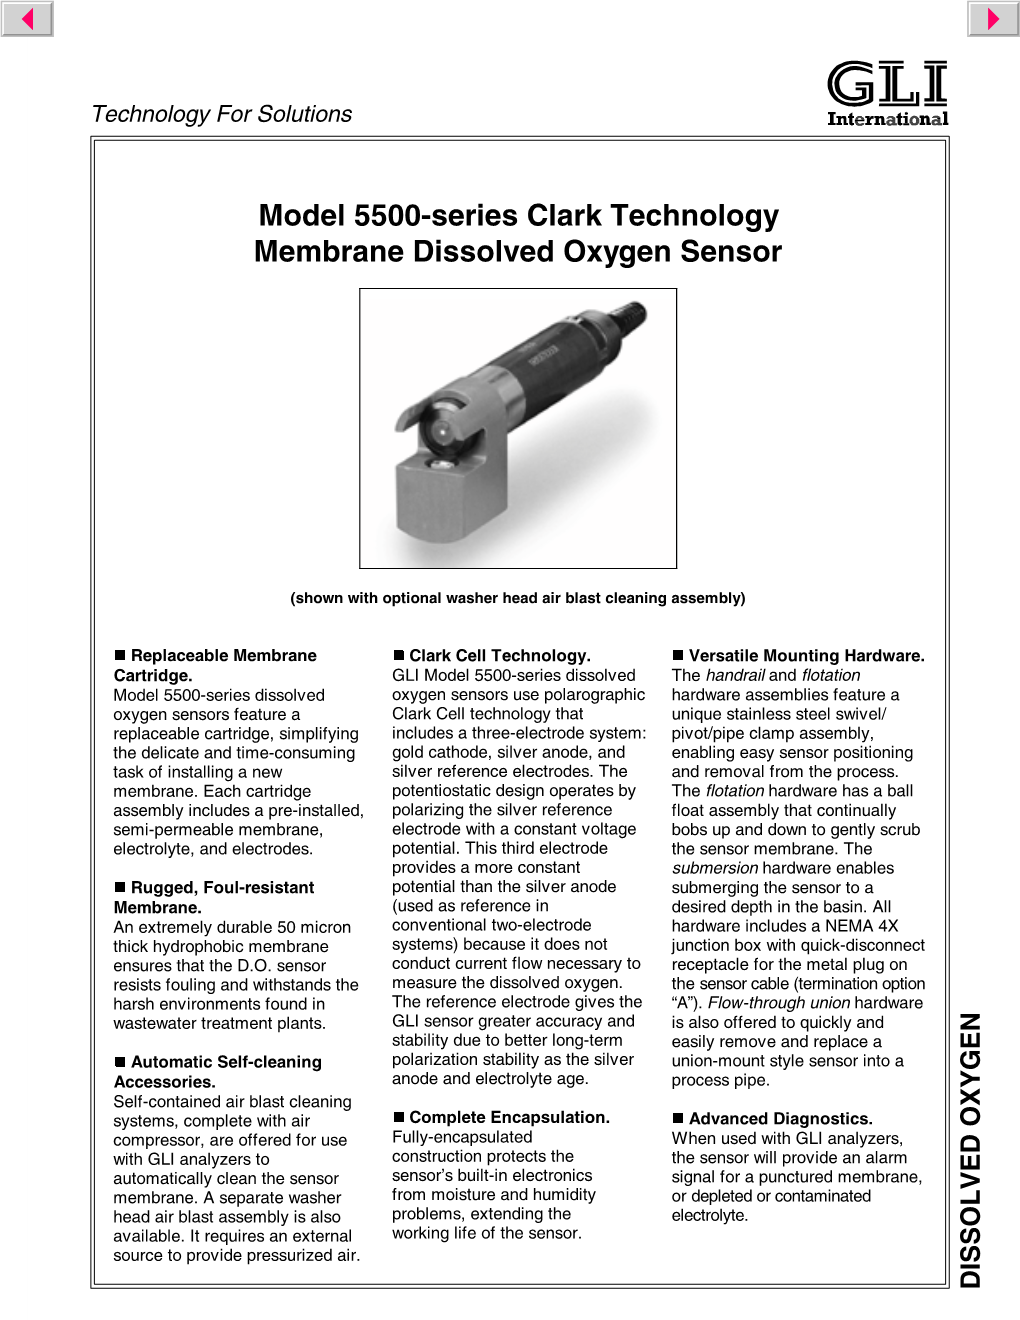 Model 5500-Series Clark Technology Membrane Dissolved Oxygen Sensor